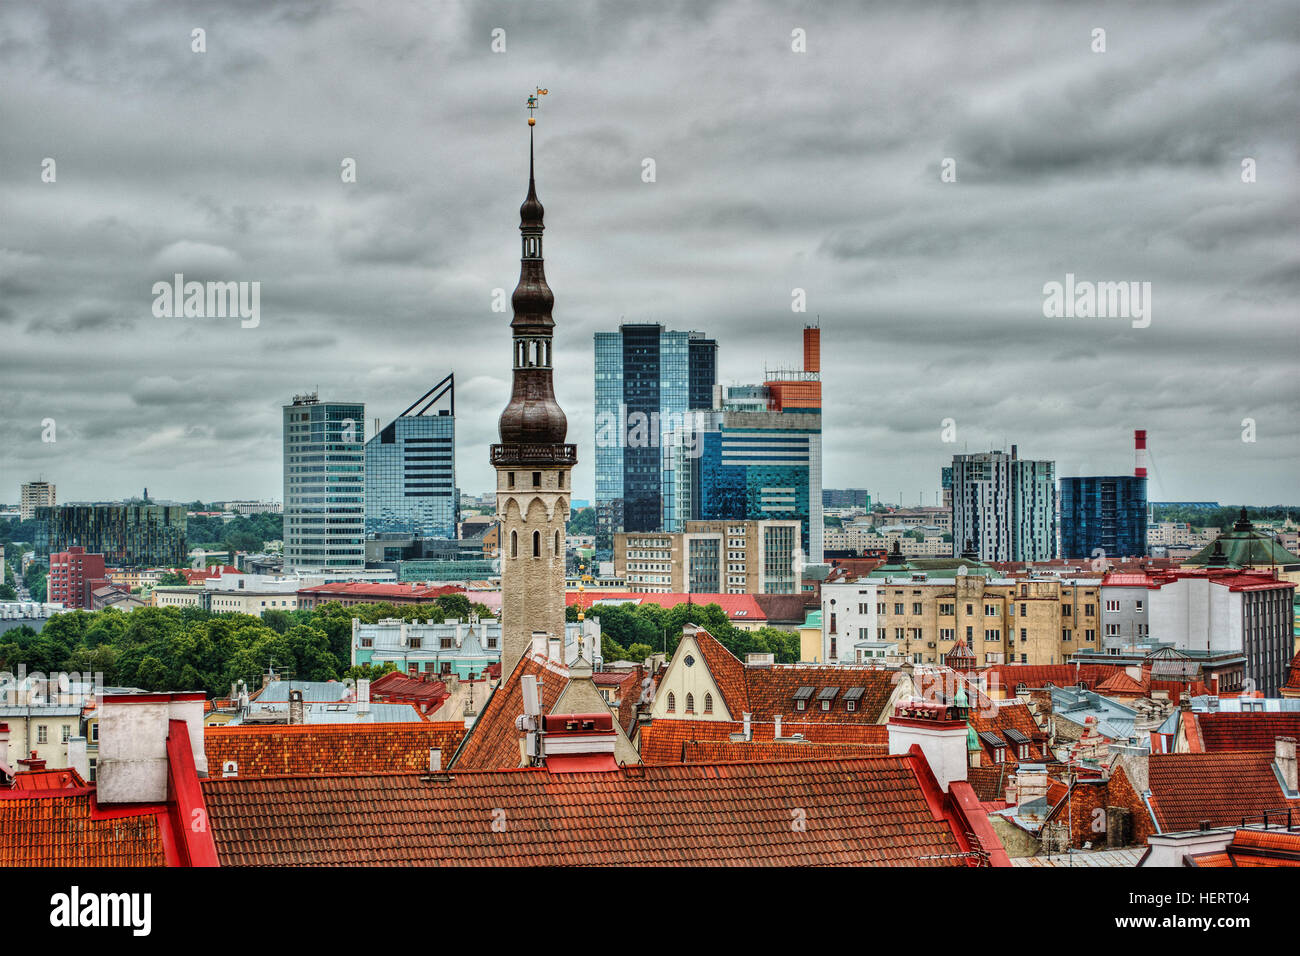 City skyline, Tallinn, Estonia Stock Photo